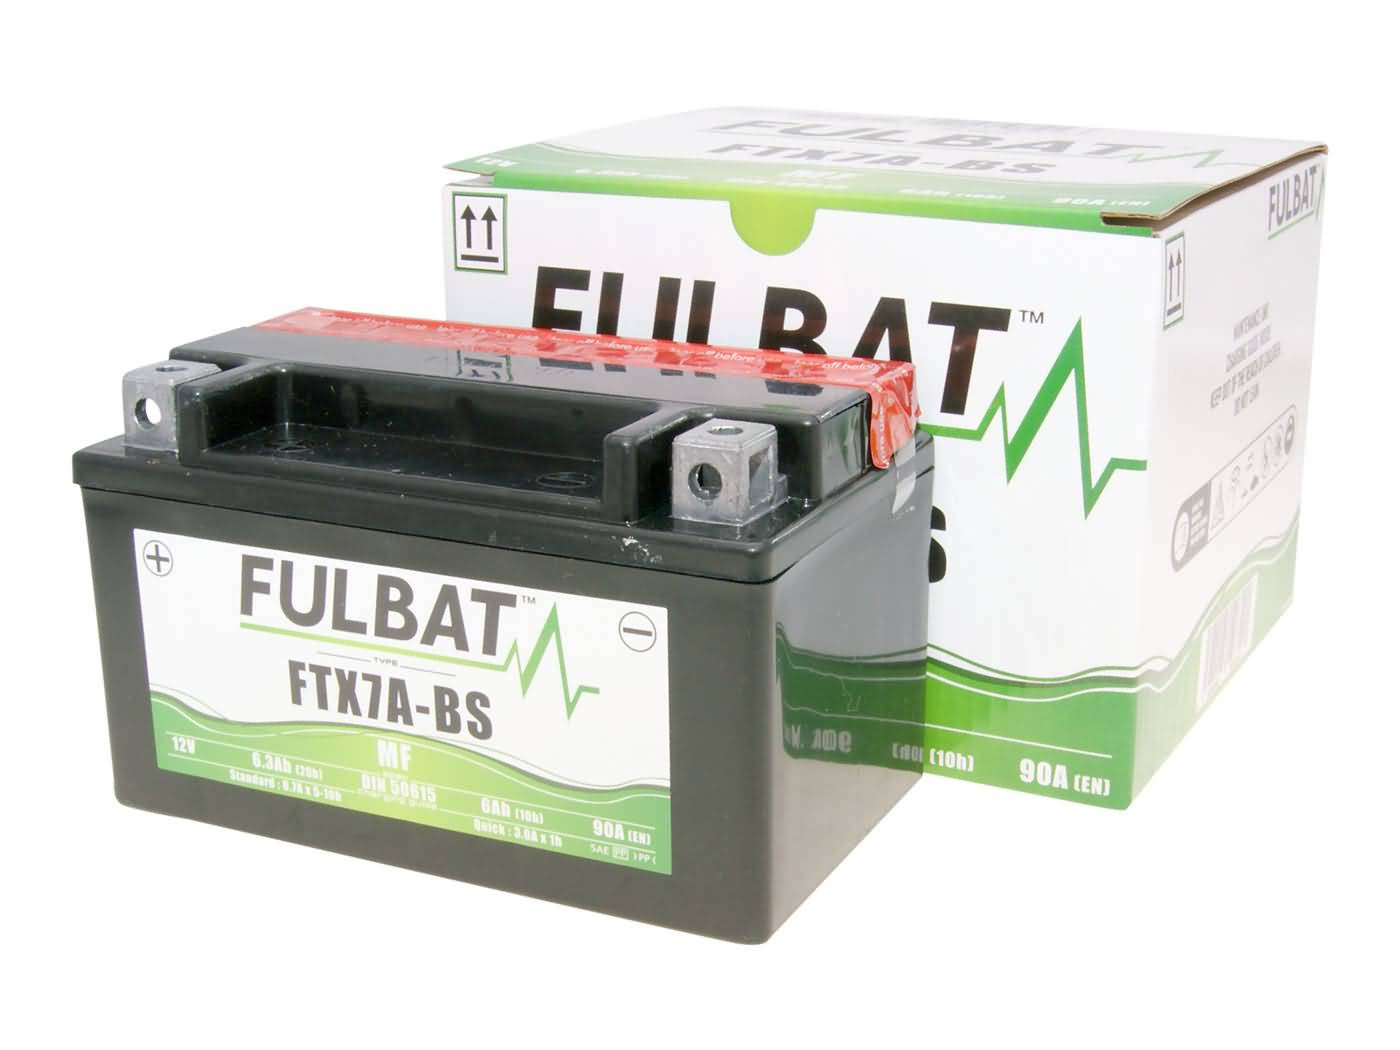 Fulbat FTX7A-BS MF gondozásmentes akkumulátor